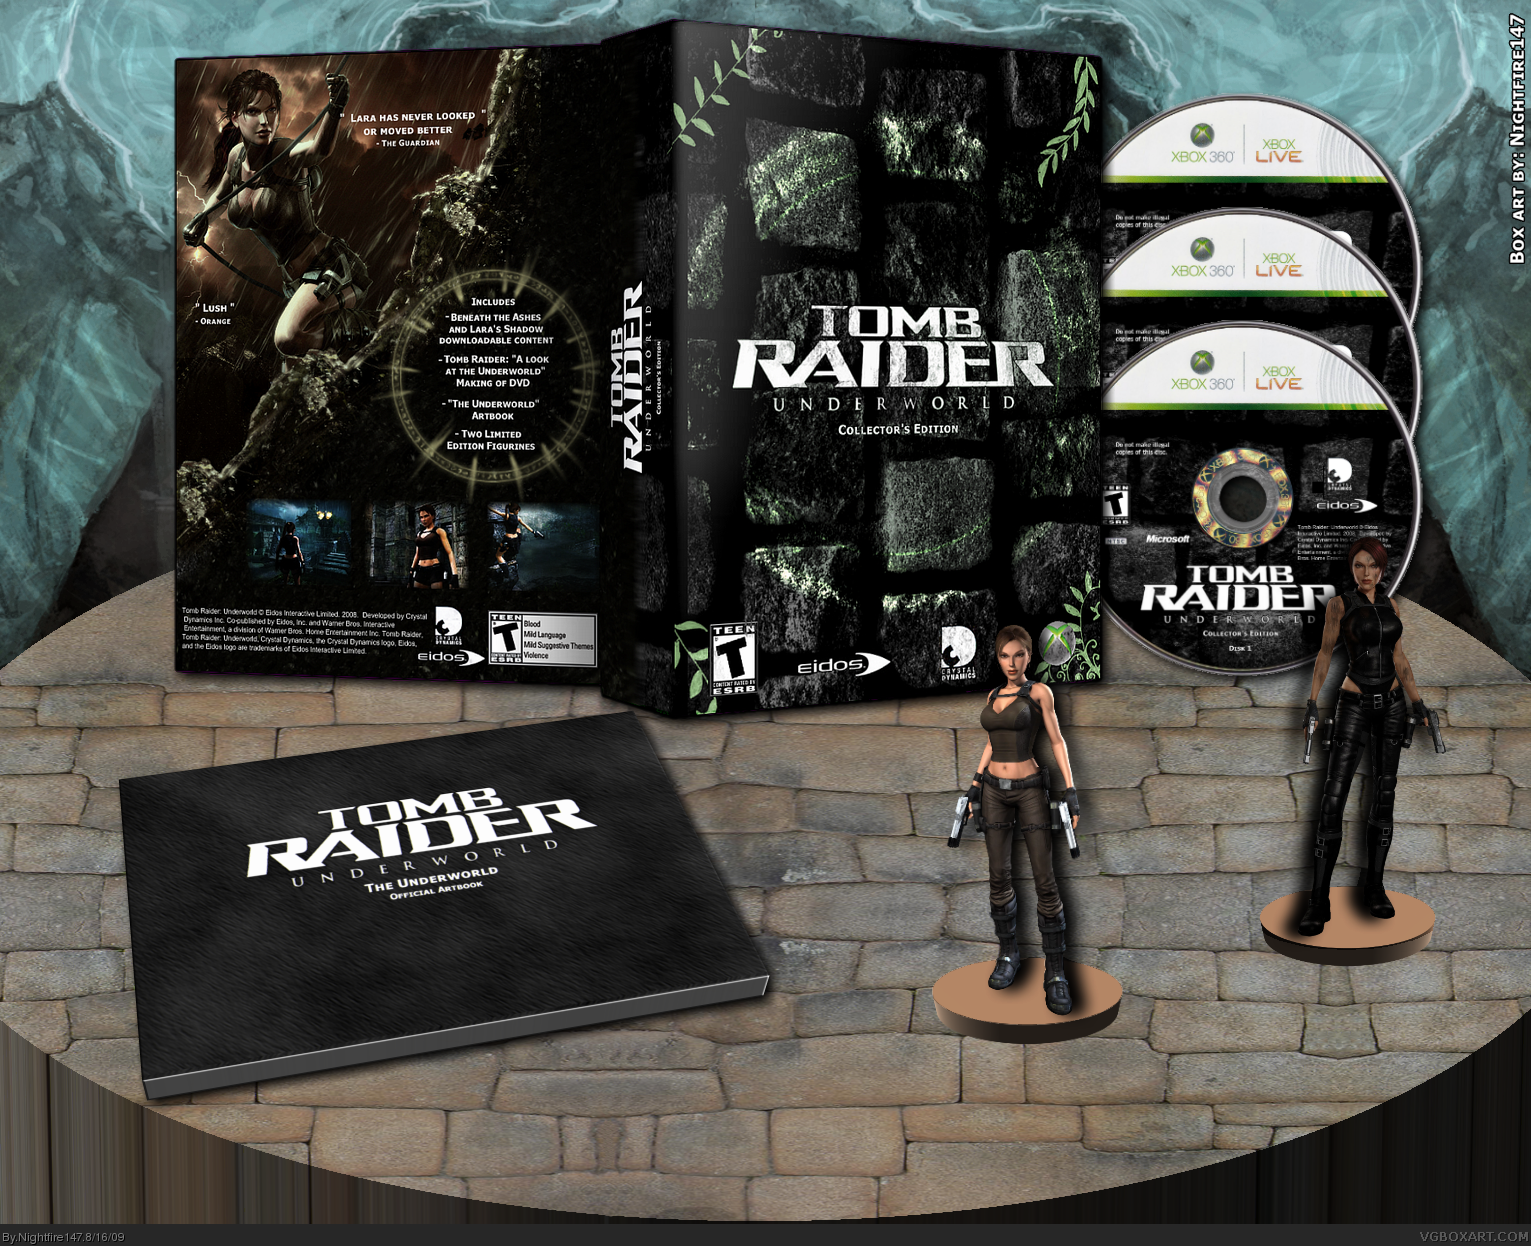 Tomb Raider: Underworld Collector's Edition box cover